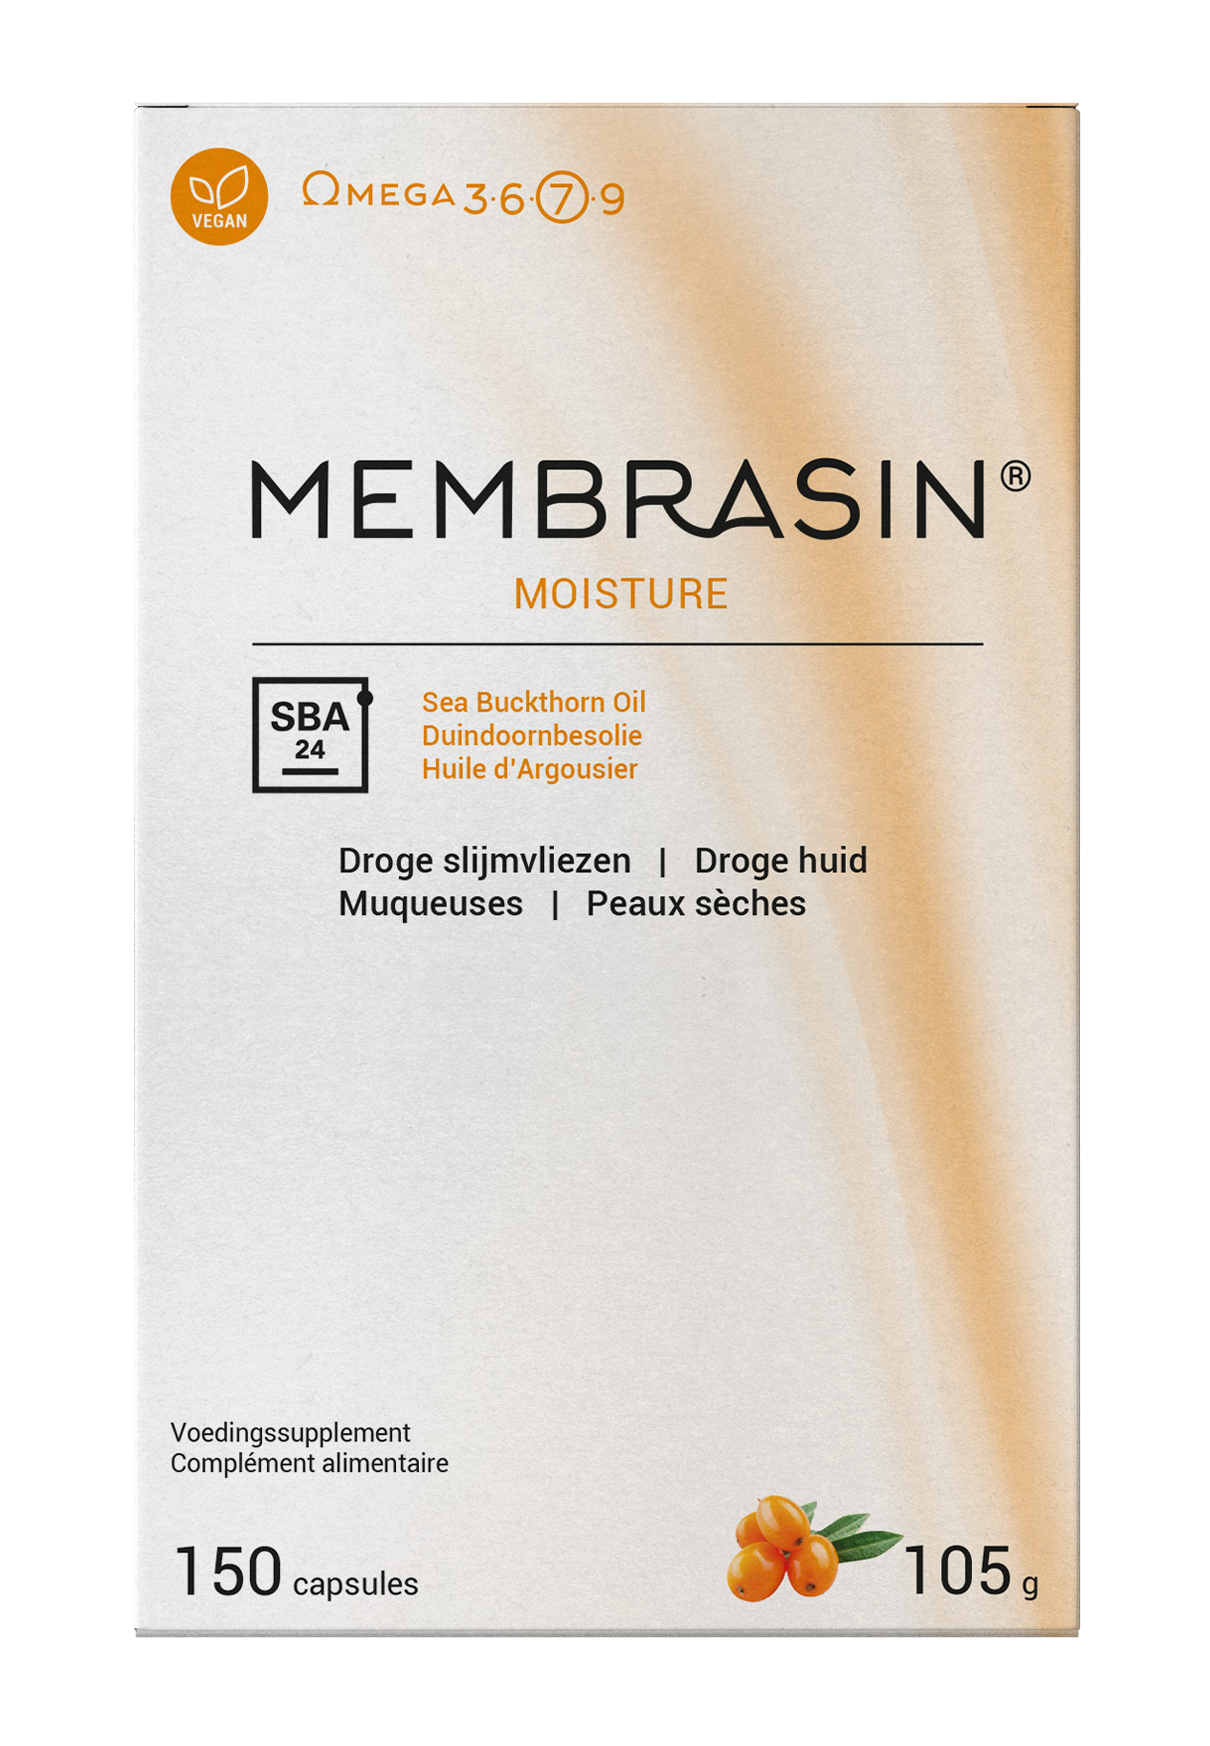 Membrasin (omega 7) 150 caps PL500/52